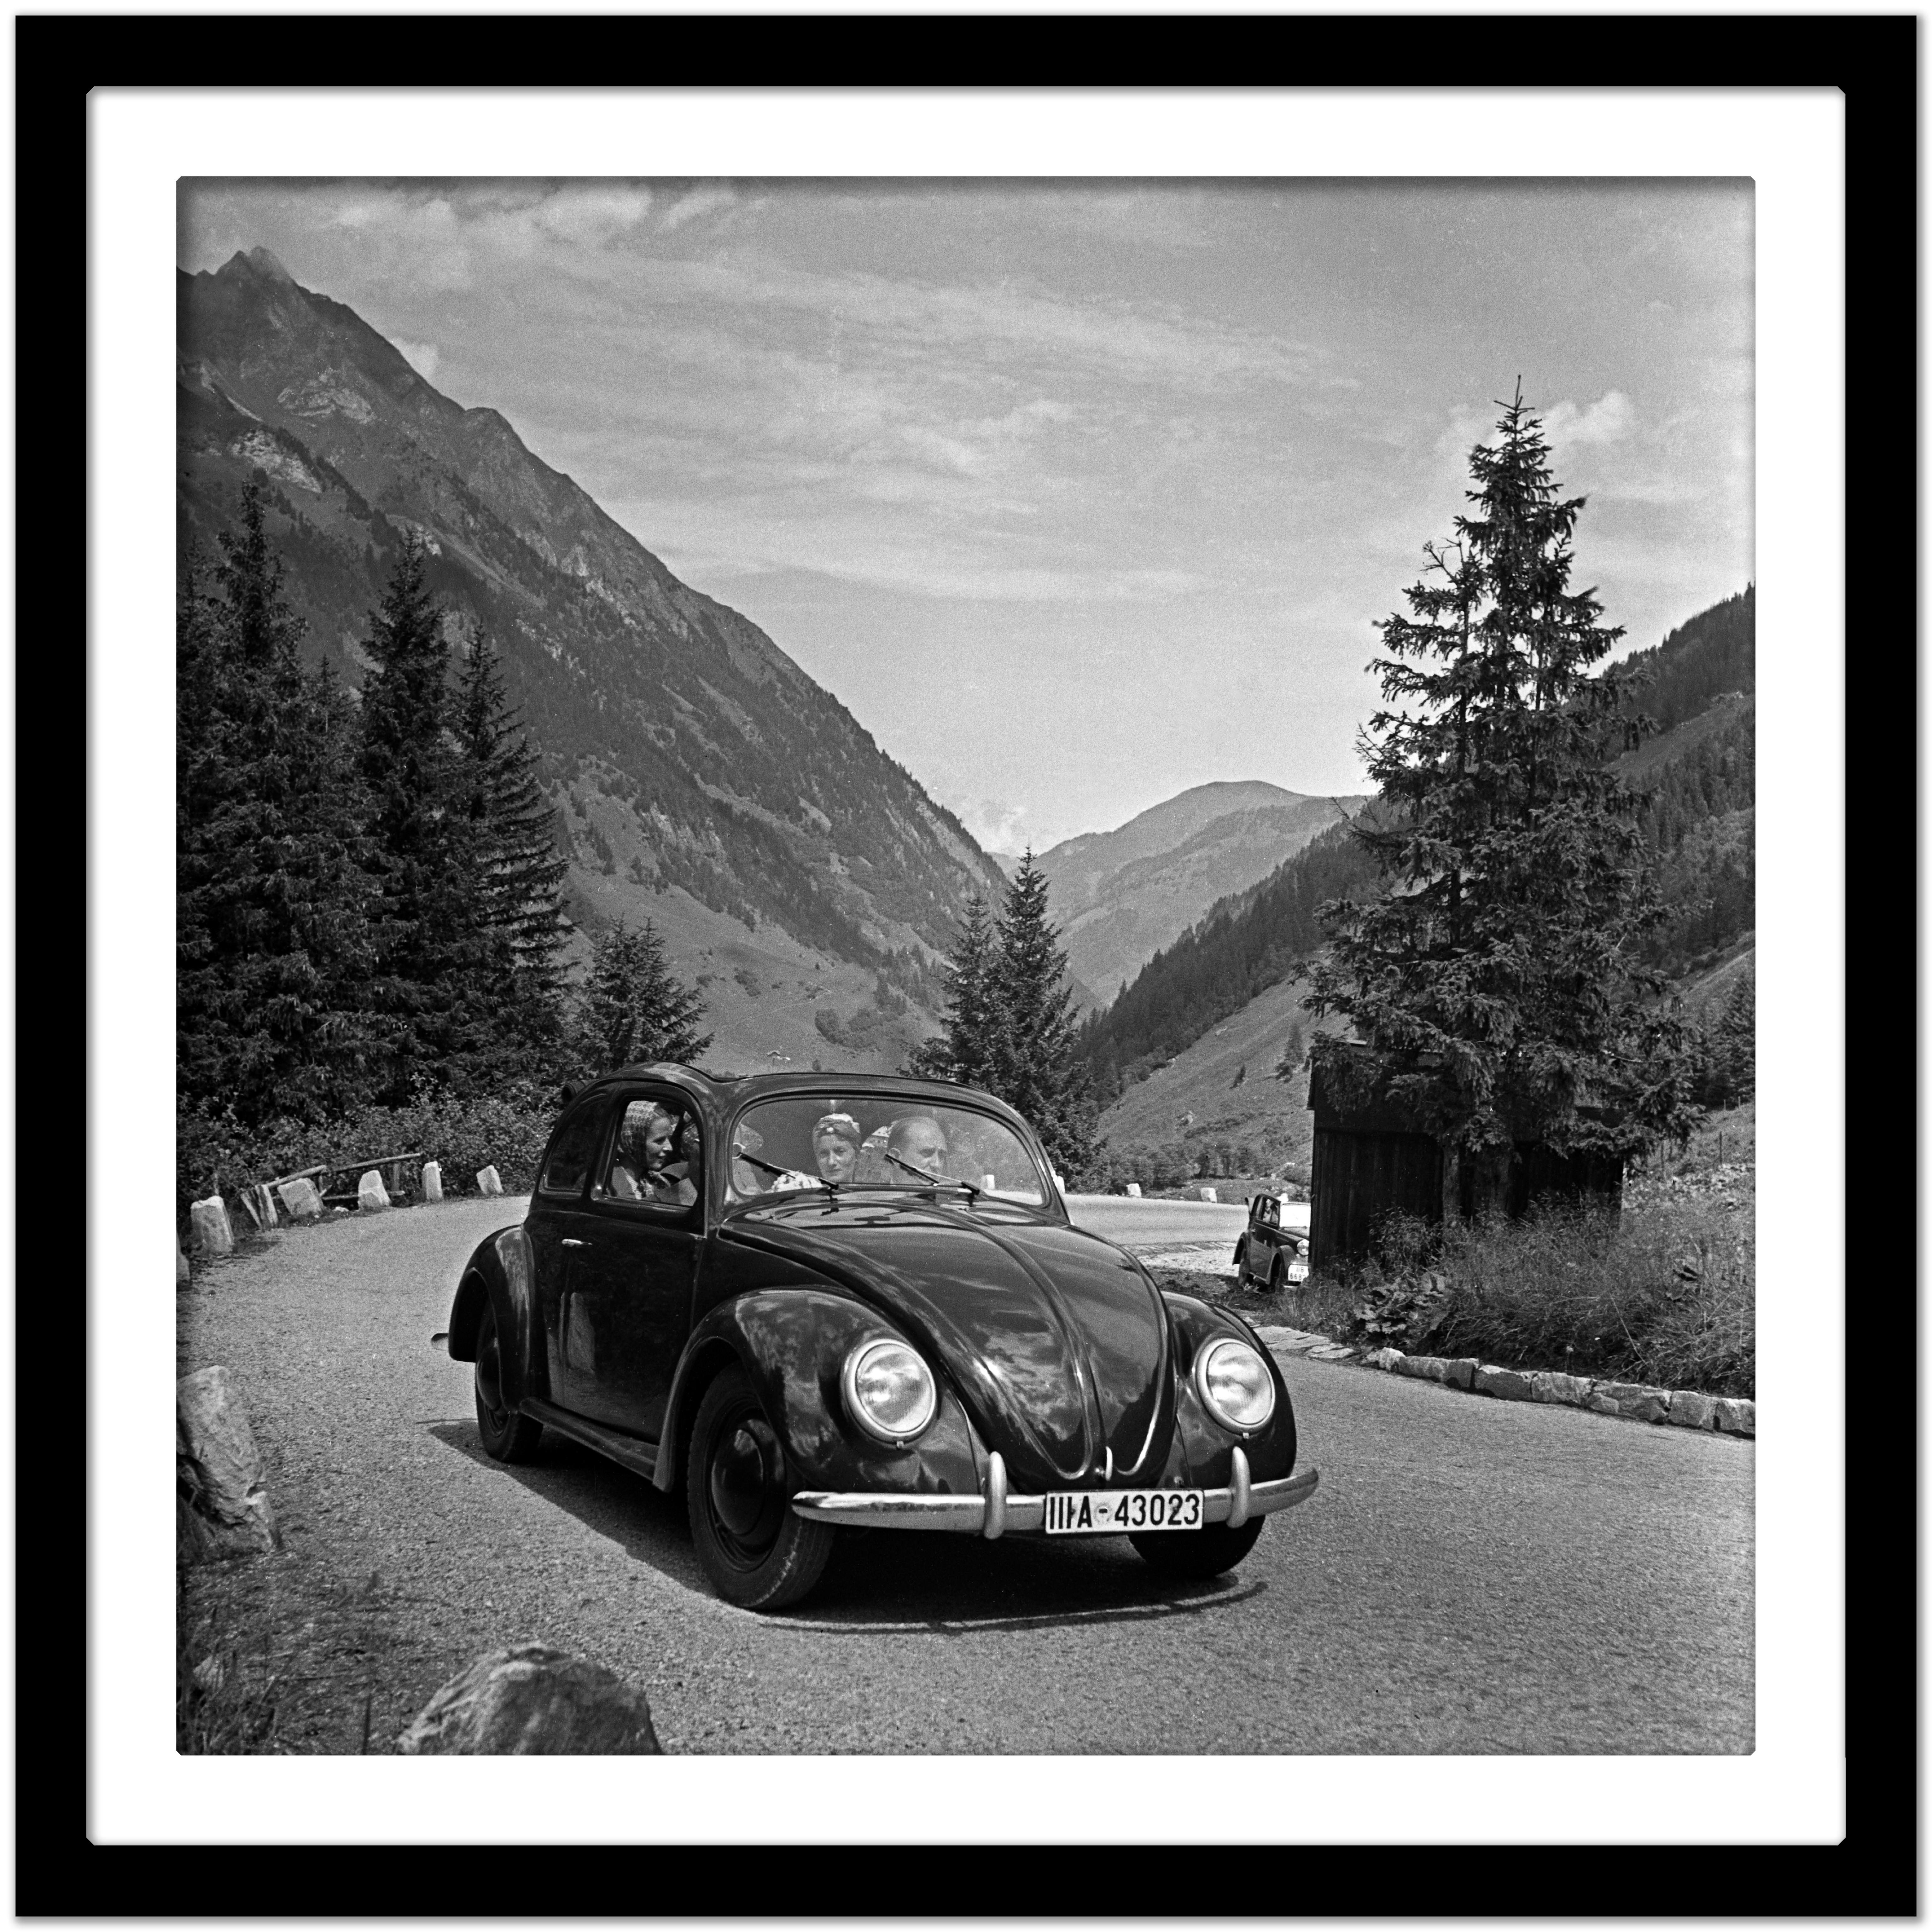 Erkunden Sie die Landschaft in einem Volkswagen-Käfer, Deutschland 1939 Später gedruckt (Grau), Black and White Photograph, von Karl Heinrich Lämmel